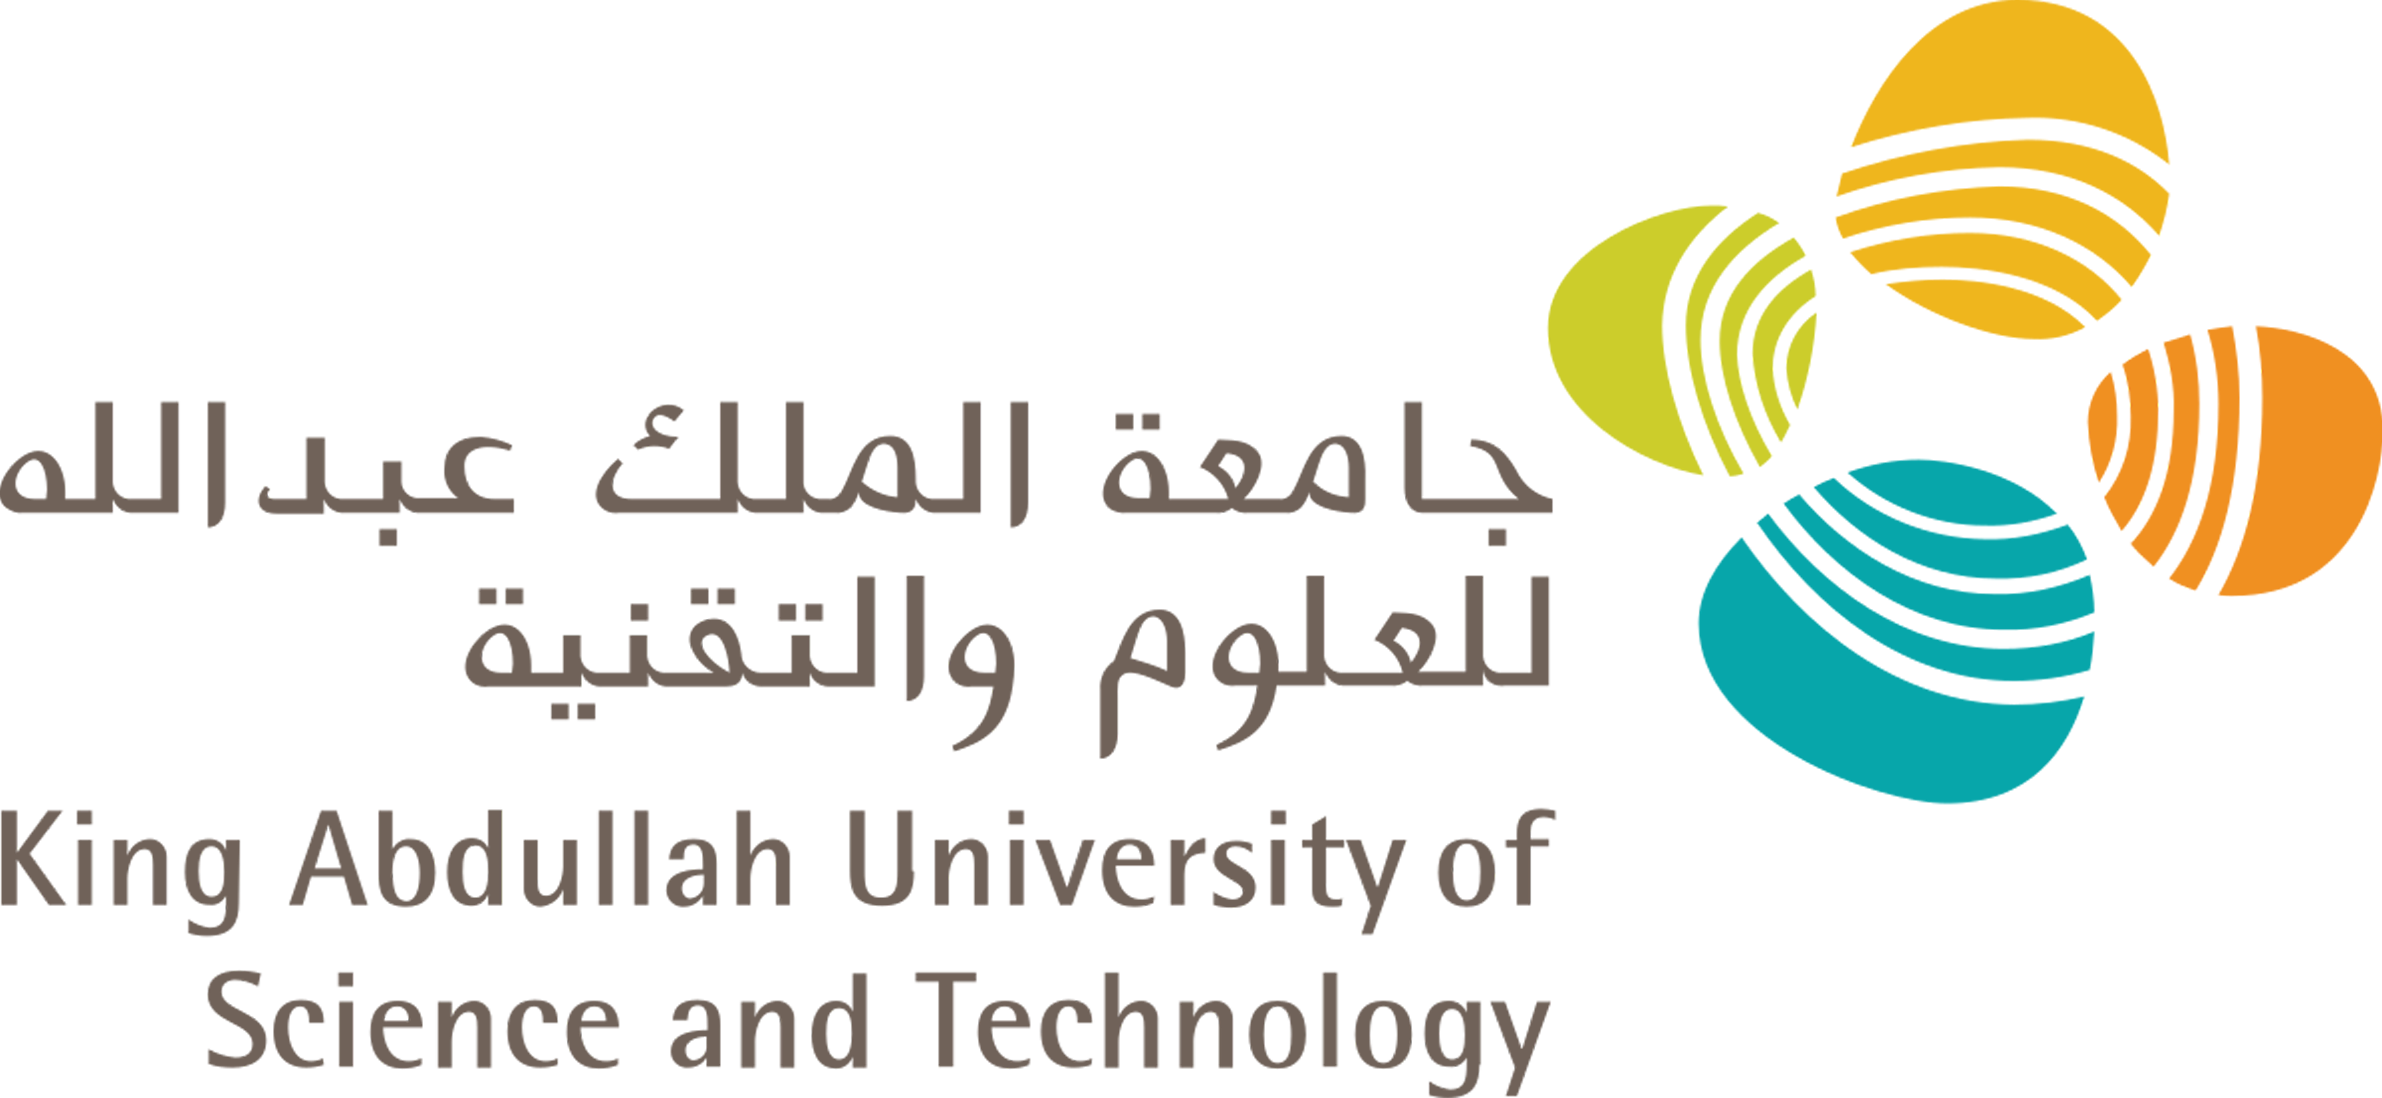 جامعة-الملك-عبدالله-للعلوم-والتقنية